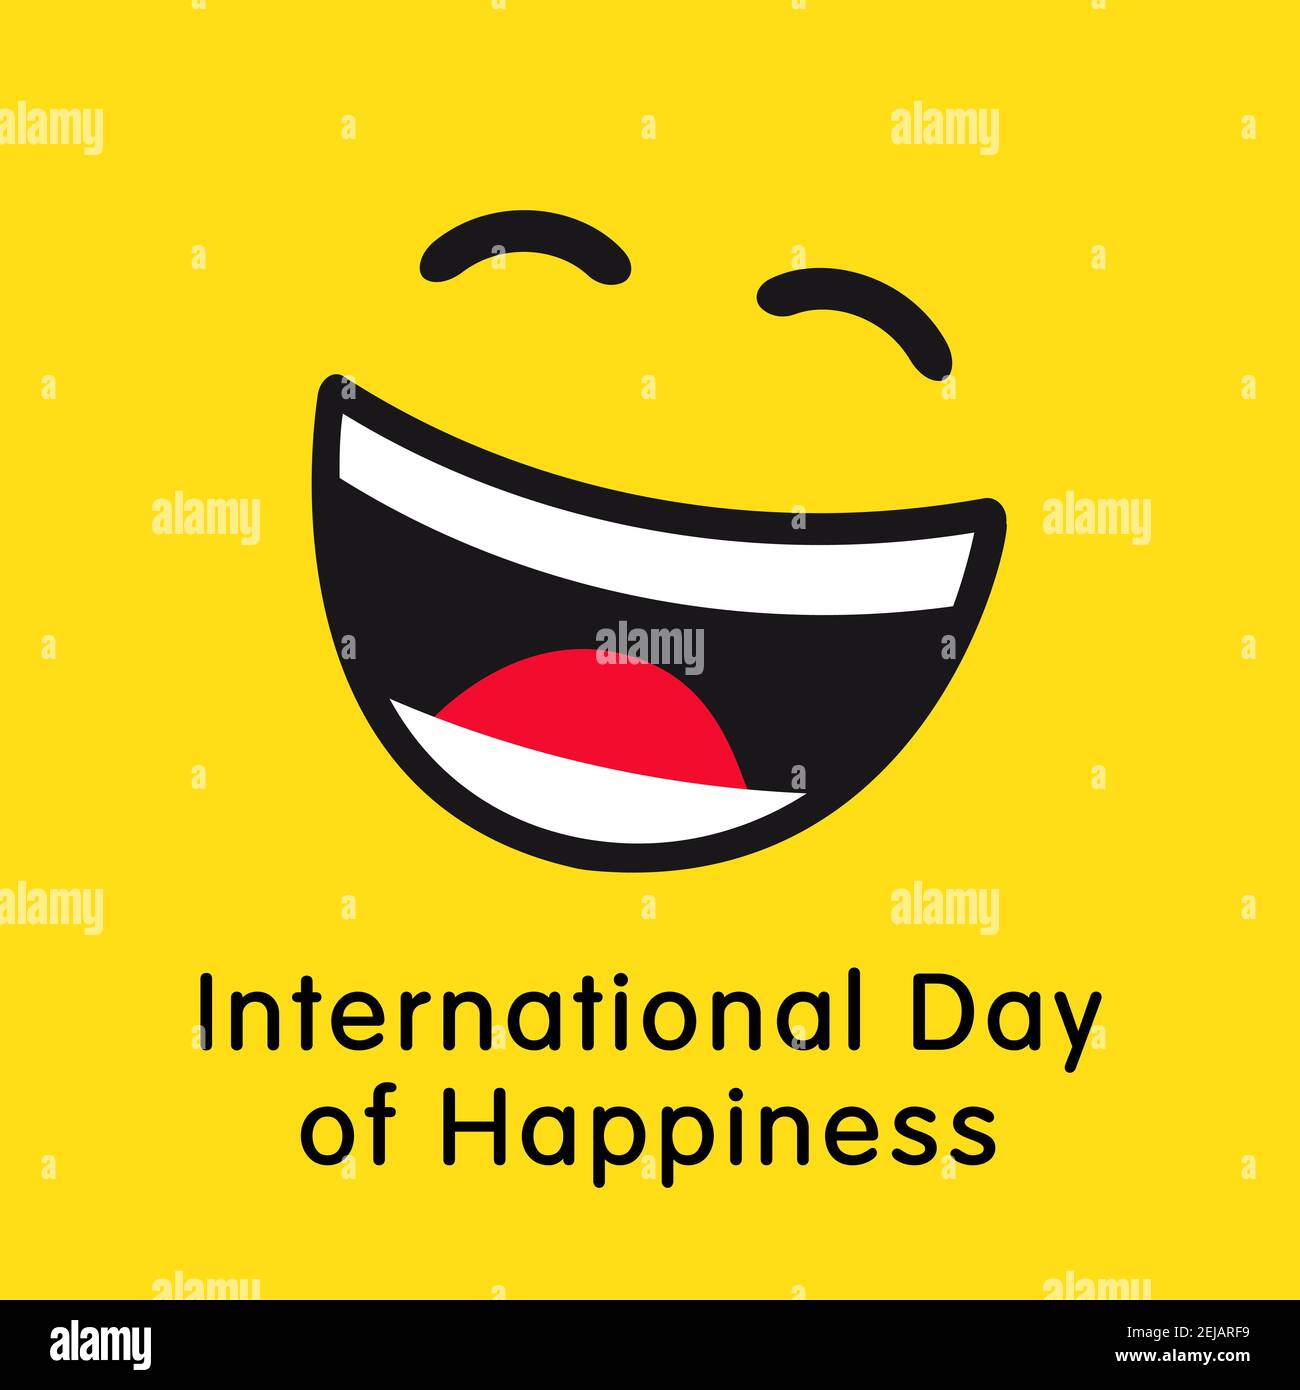 World Happiness Day Grußkarte Konzept. Internationaler Tag des Glücks kreative Gratzen. Isolierte abstrakte Grafik-Design-Vorlage. Internet messe Stock Vektor